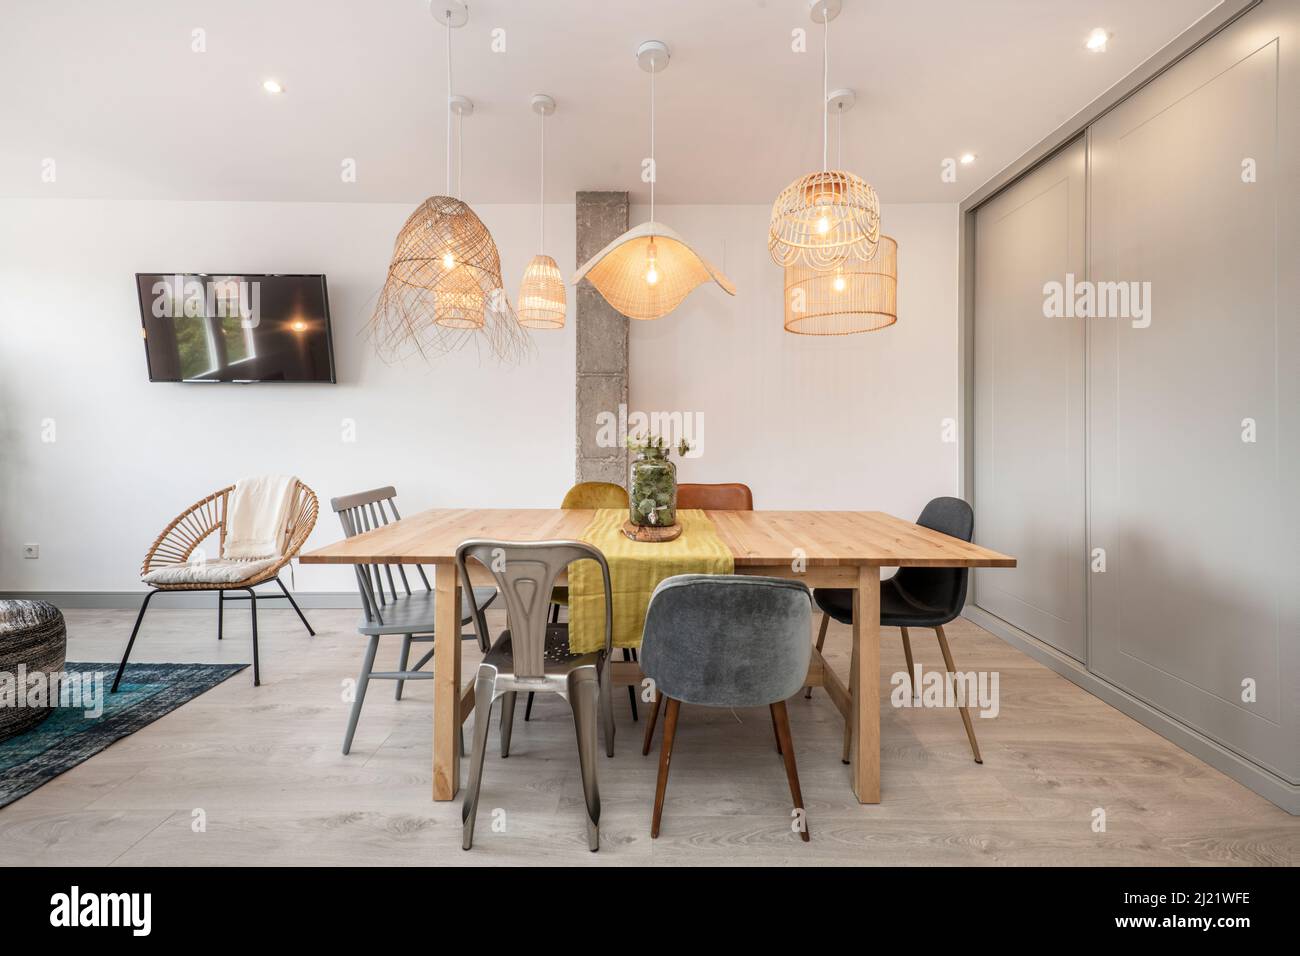 Wohnzimmer mit einem Esstisch aus Holz, gepolsterten Stühlen aus Holz und Metall und Korblampen, einem hellen Holzboden und einem Einbauschrank mit grauen en Stockfoto